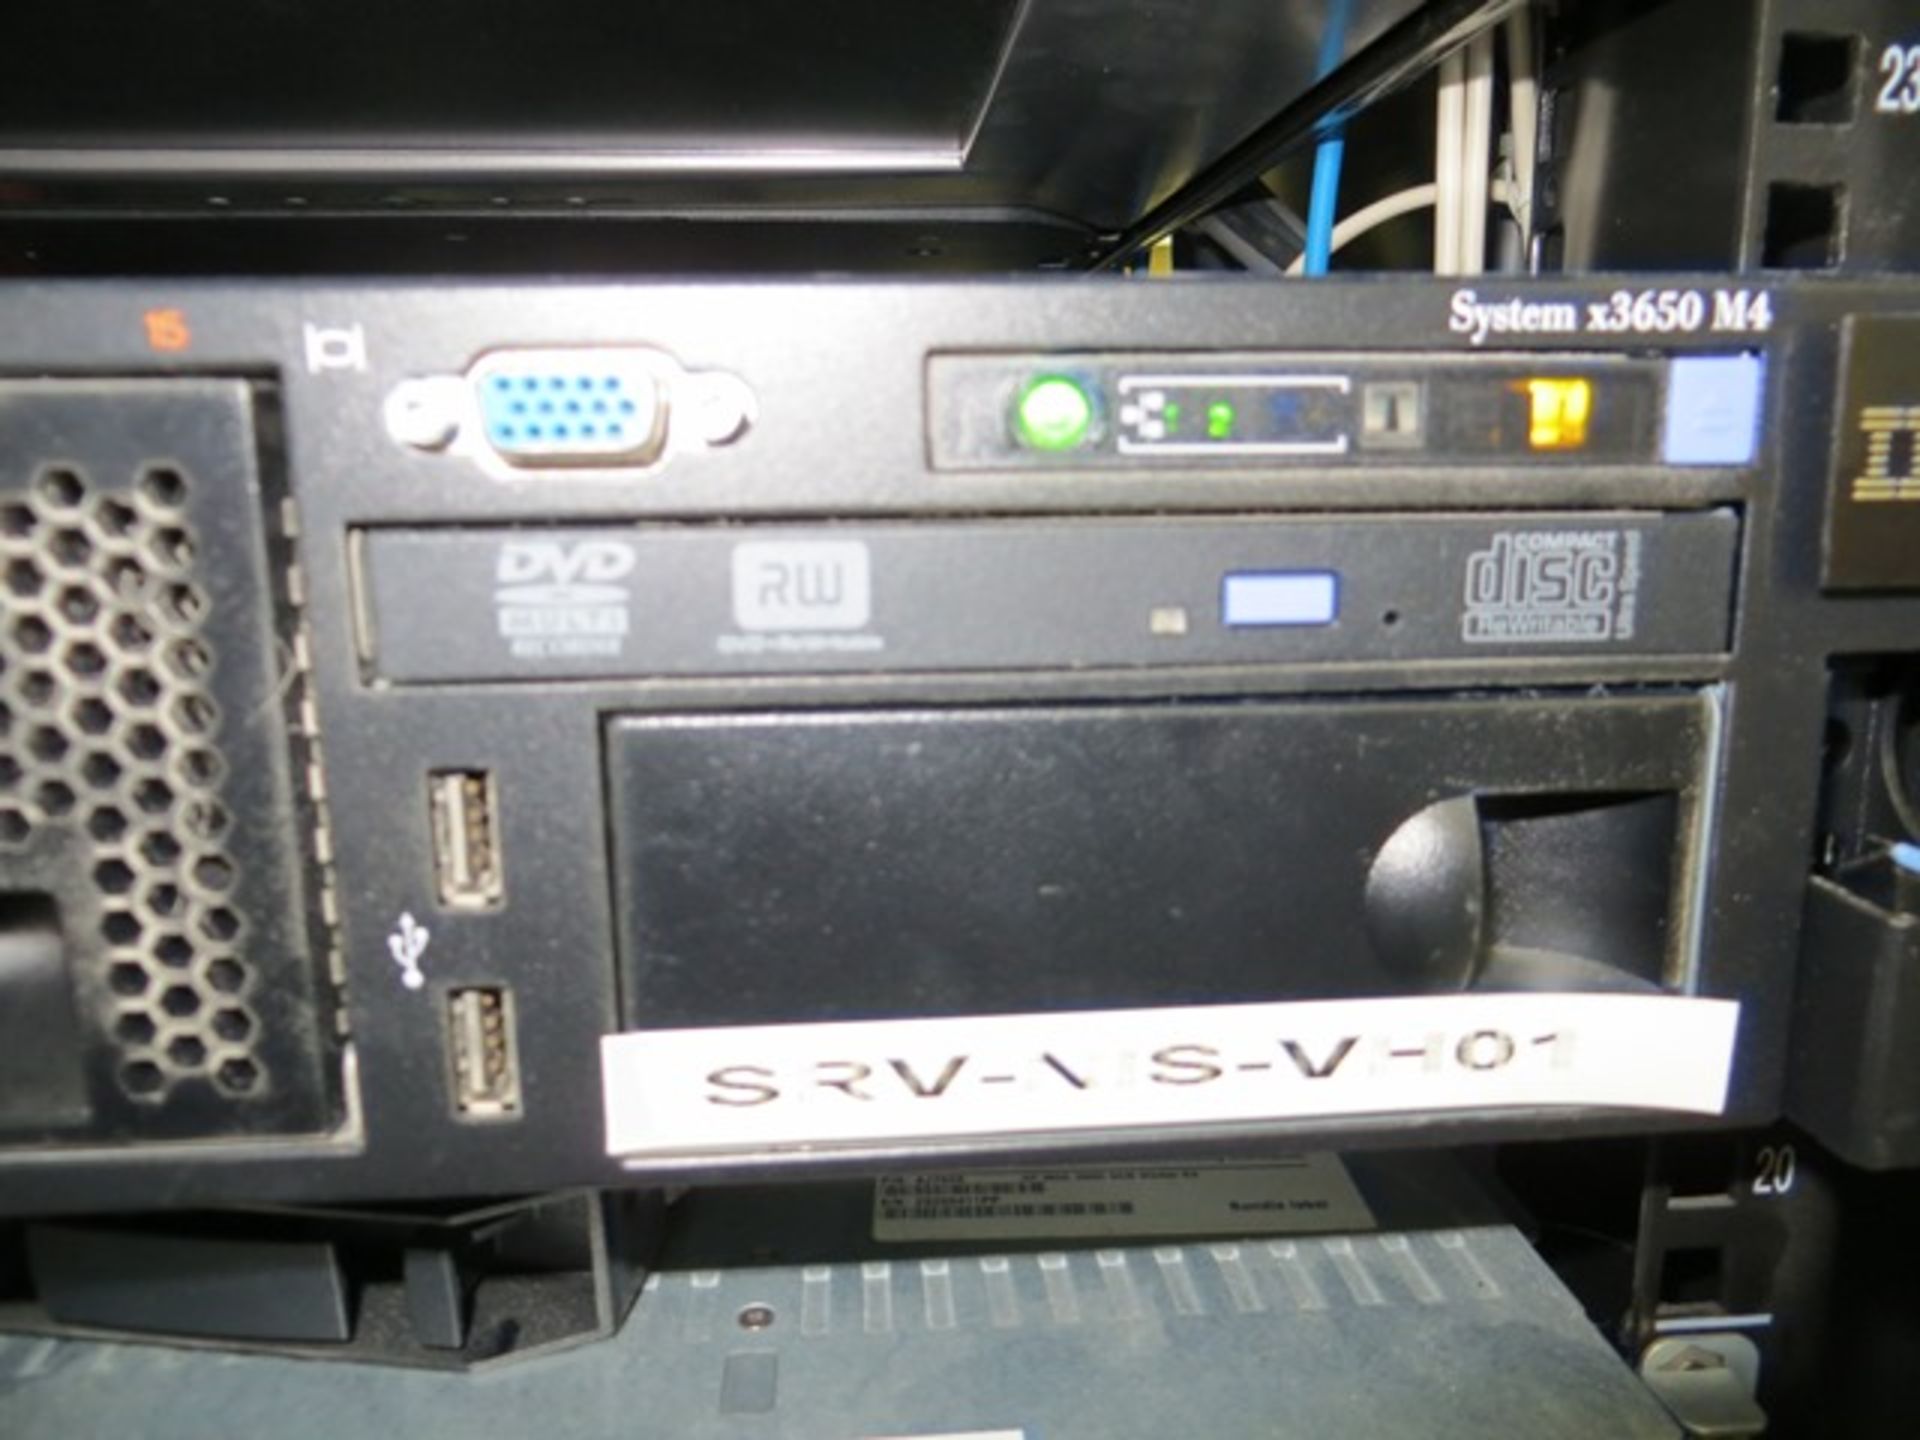 IBM X3650 M4 server s/n KDOM2TO